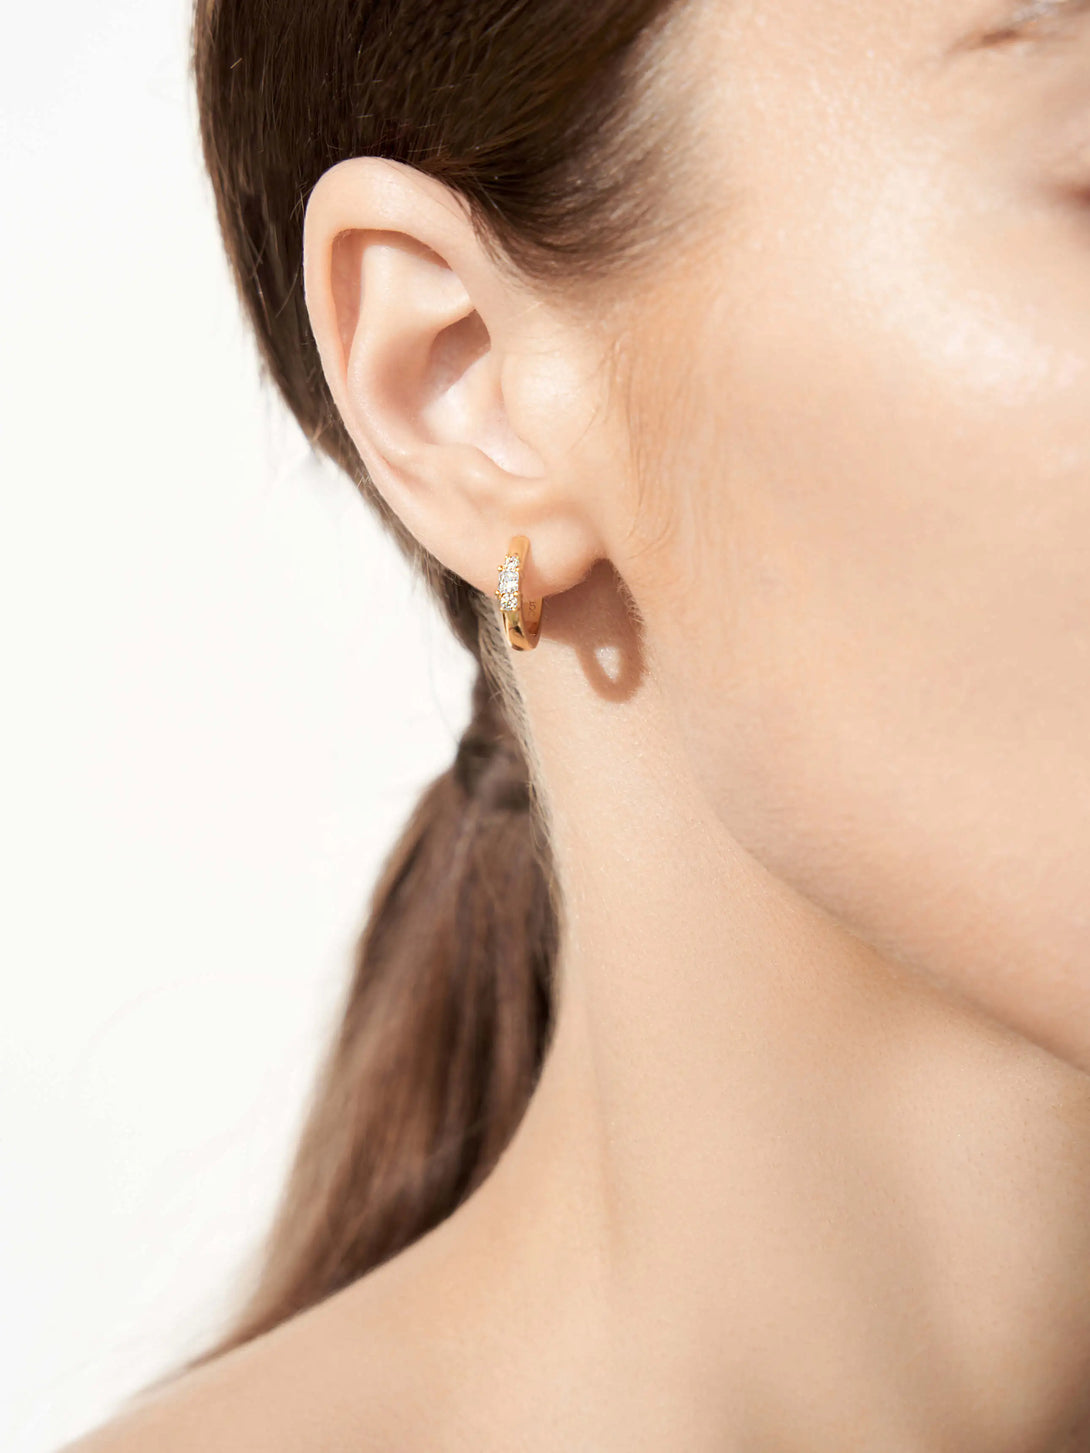 Oval Delicate Huggie Earrings - OOTDY